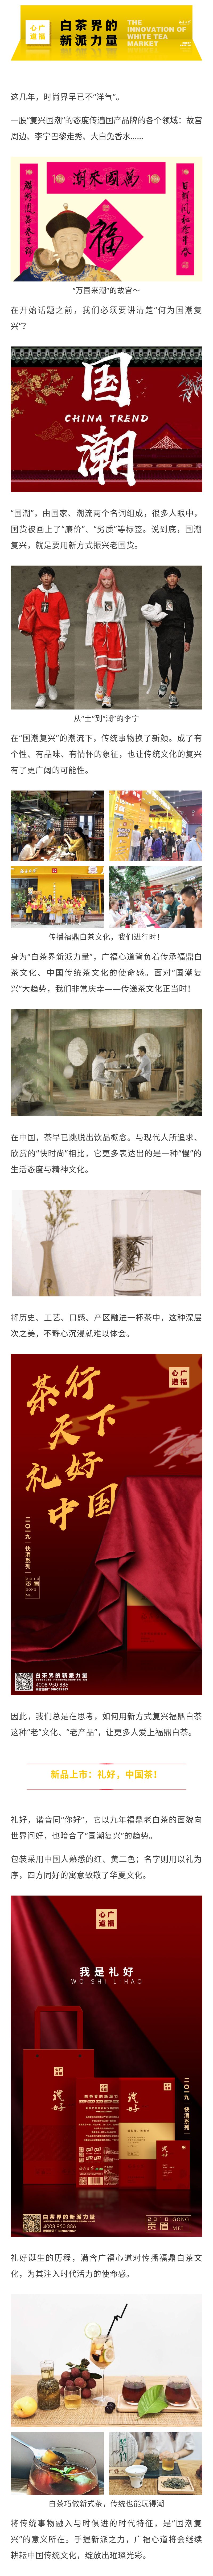 中国红、儒礼、四方同好...这款新品是给传统文化的一封情书|心品上市(图1)